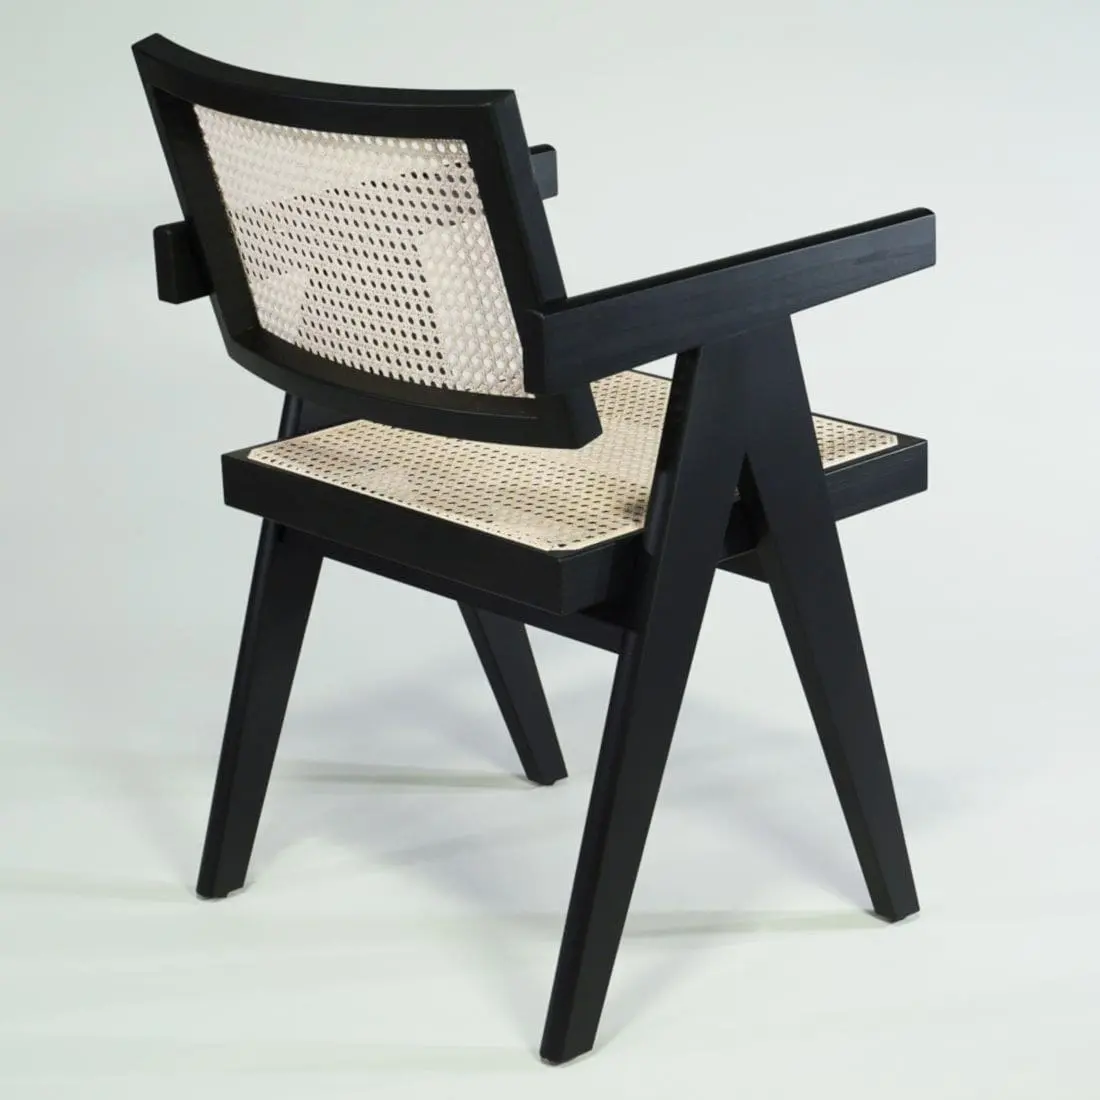 Jeanneret Armlehnstuhl schwarz, Complex Chair, Stuhl Vintage Design Klassiker für Schreibtisch, Esstisch, Besprechung